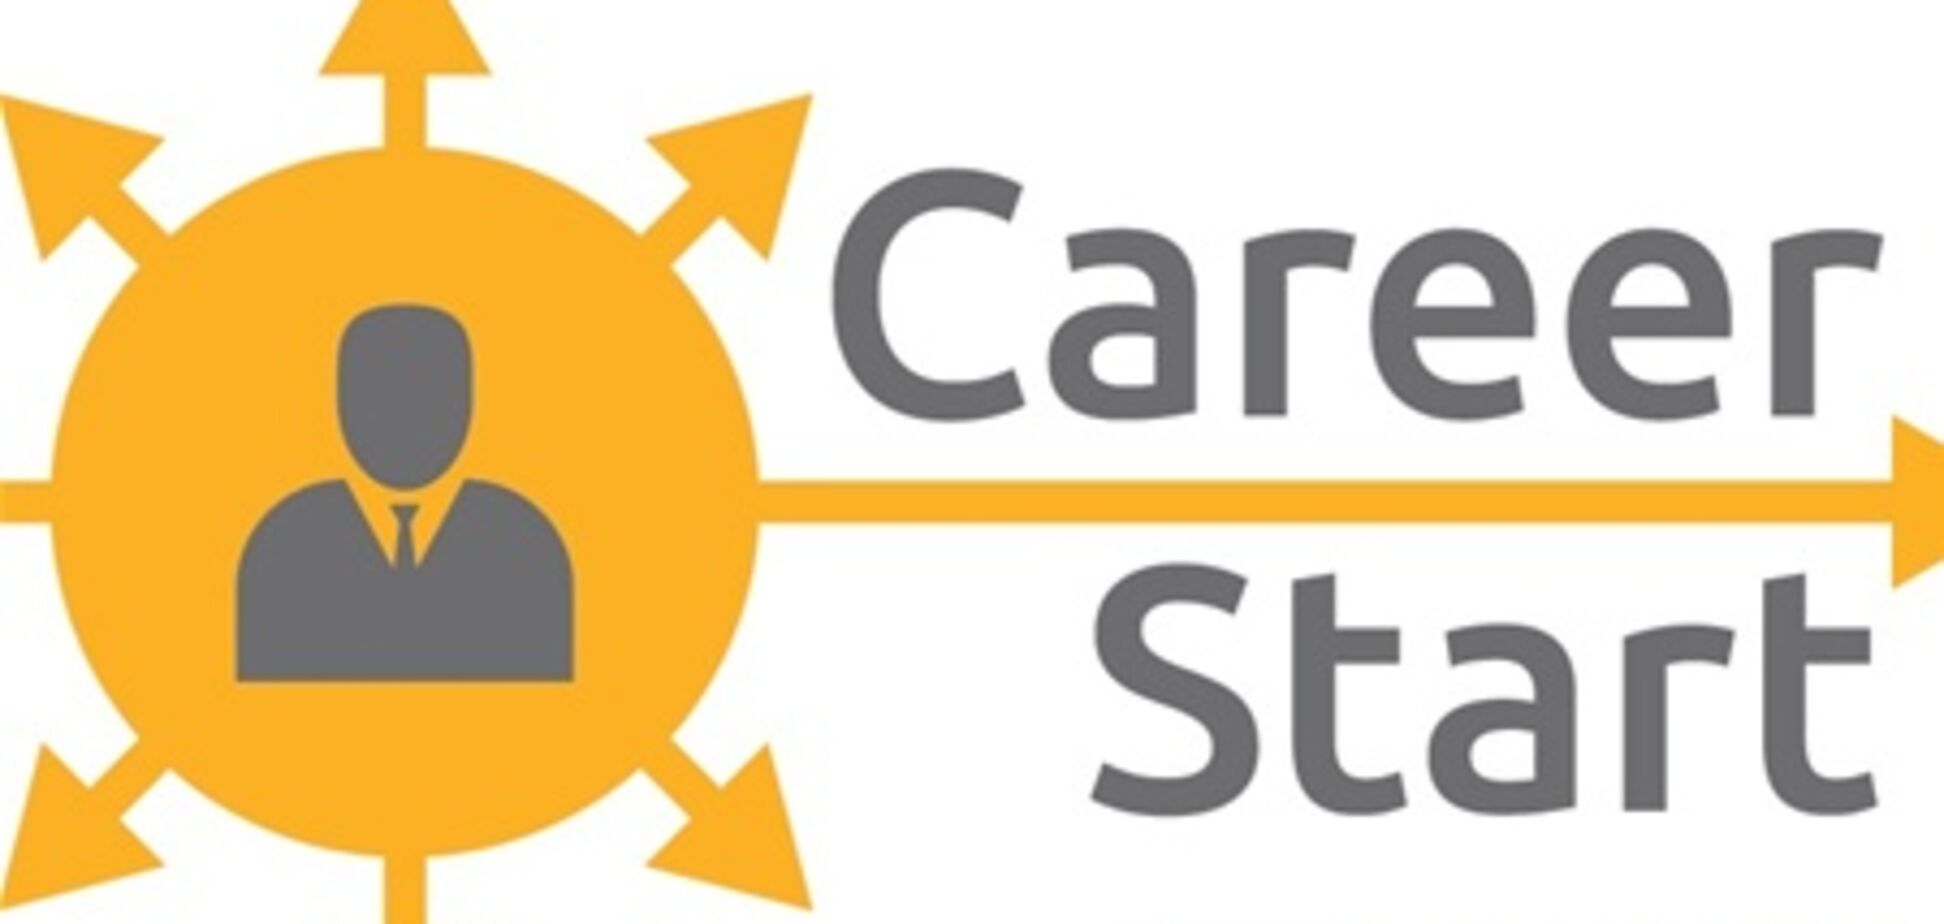 Форум карьеры Career Start'13 открывает двери к новым возможностям